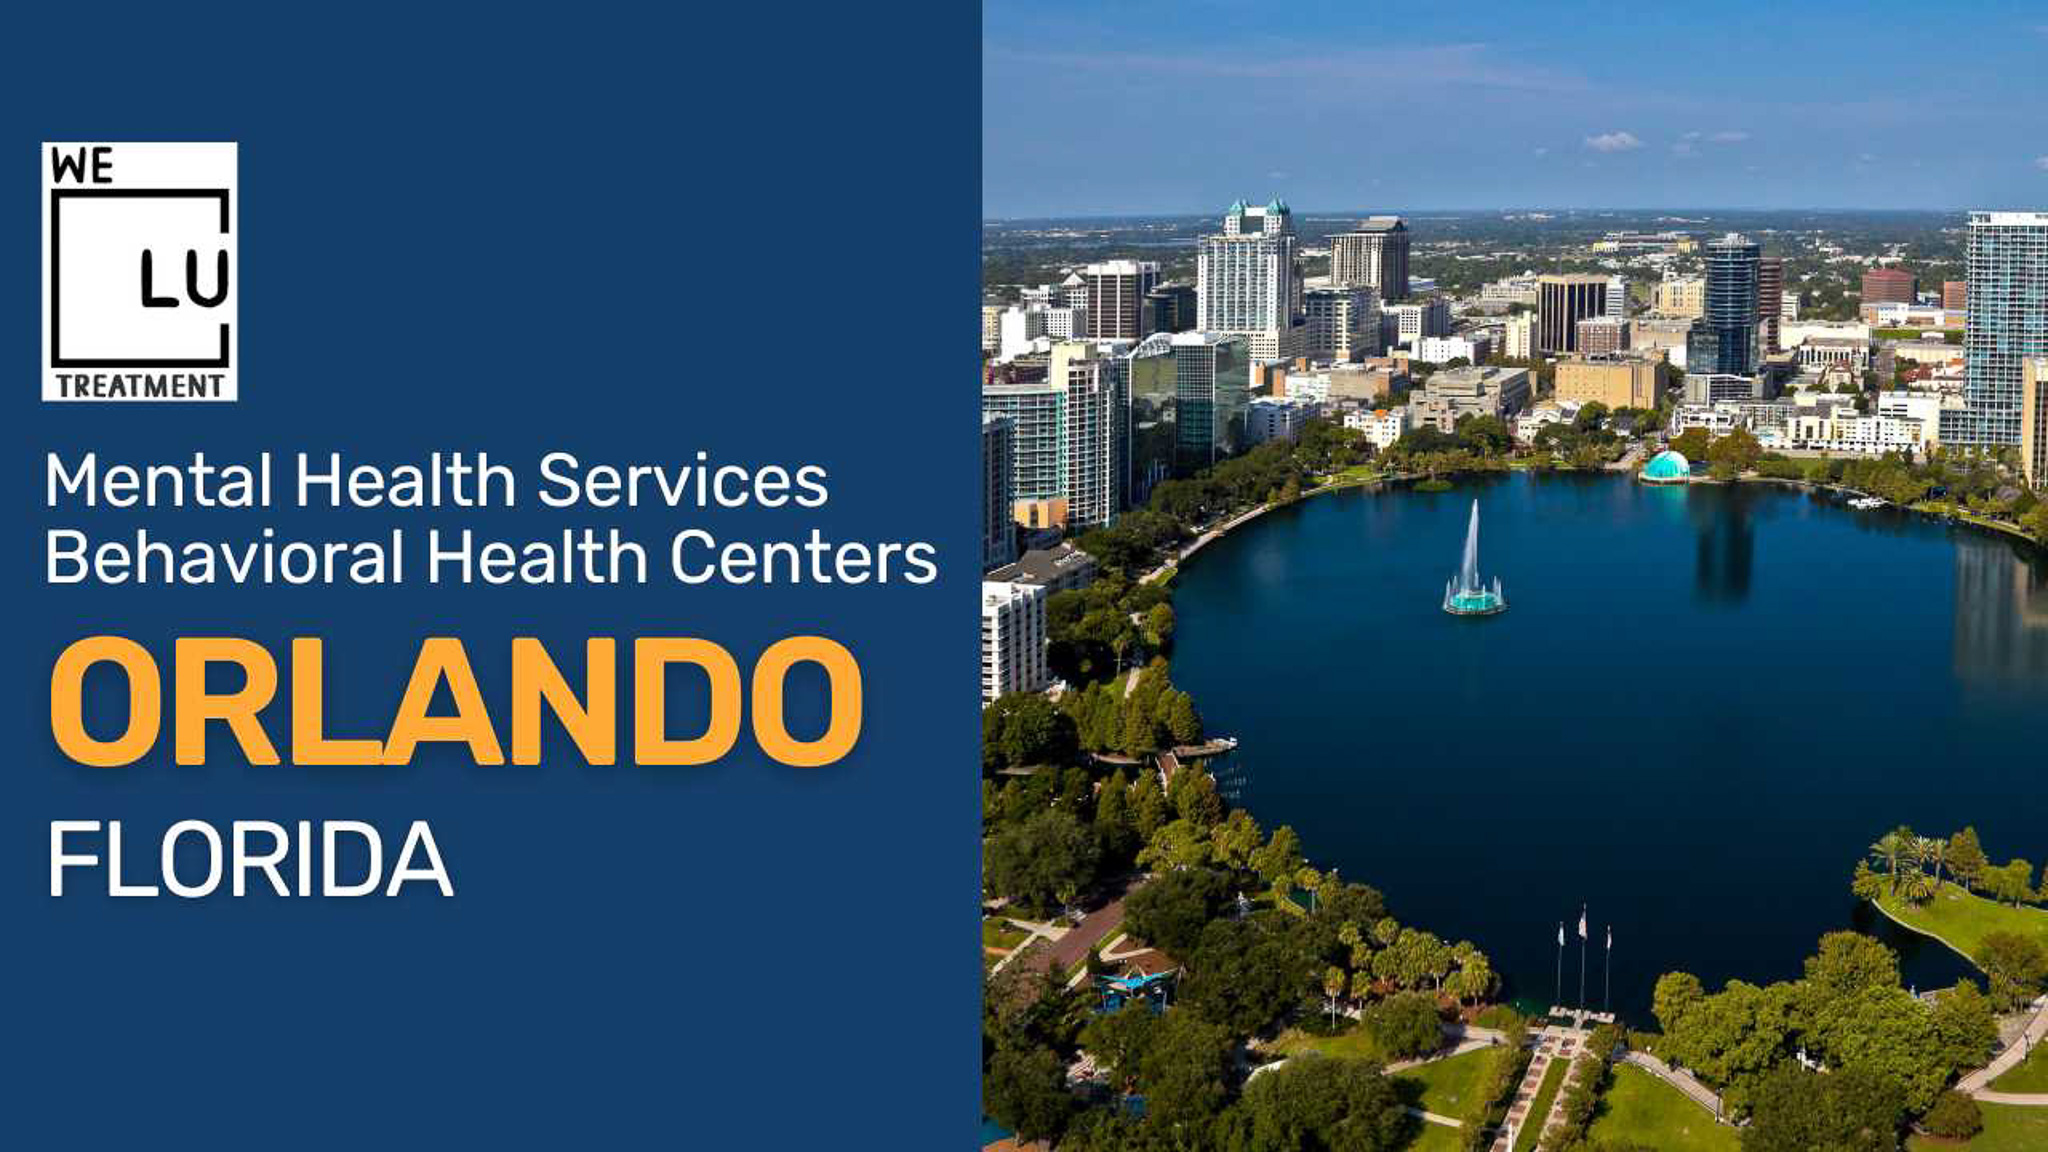 Orlando, Florida Mental Health Resources